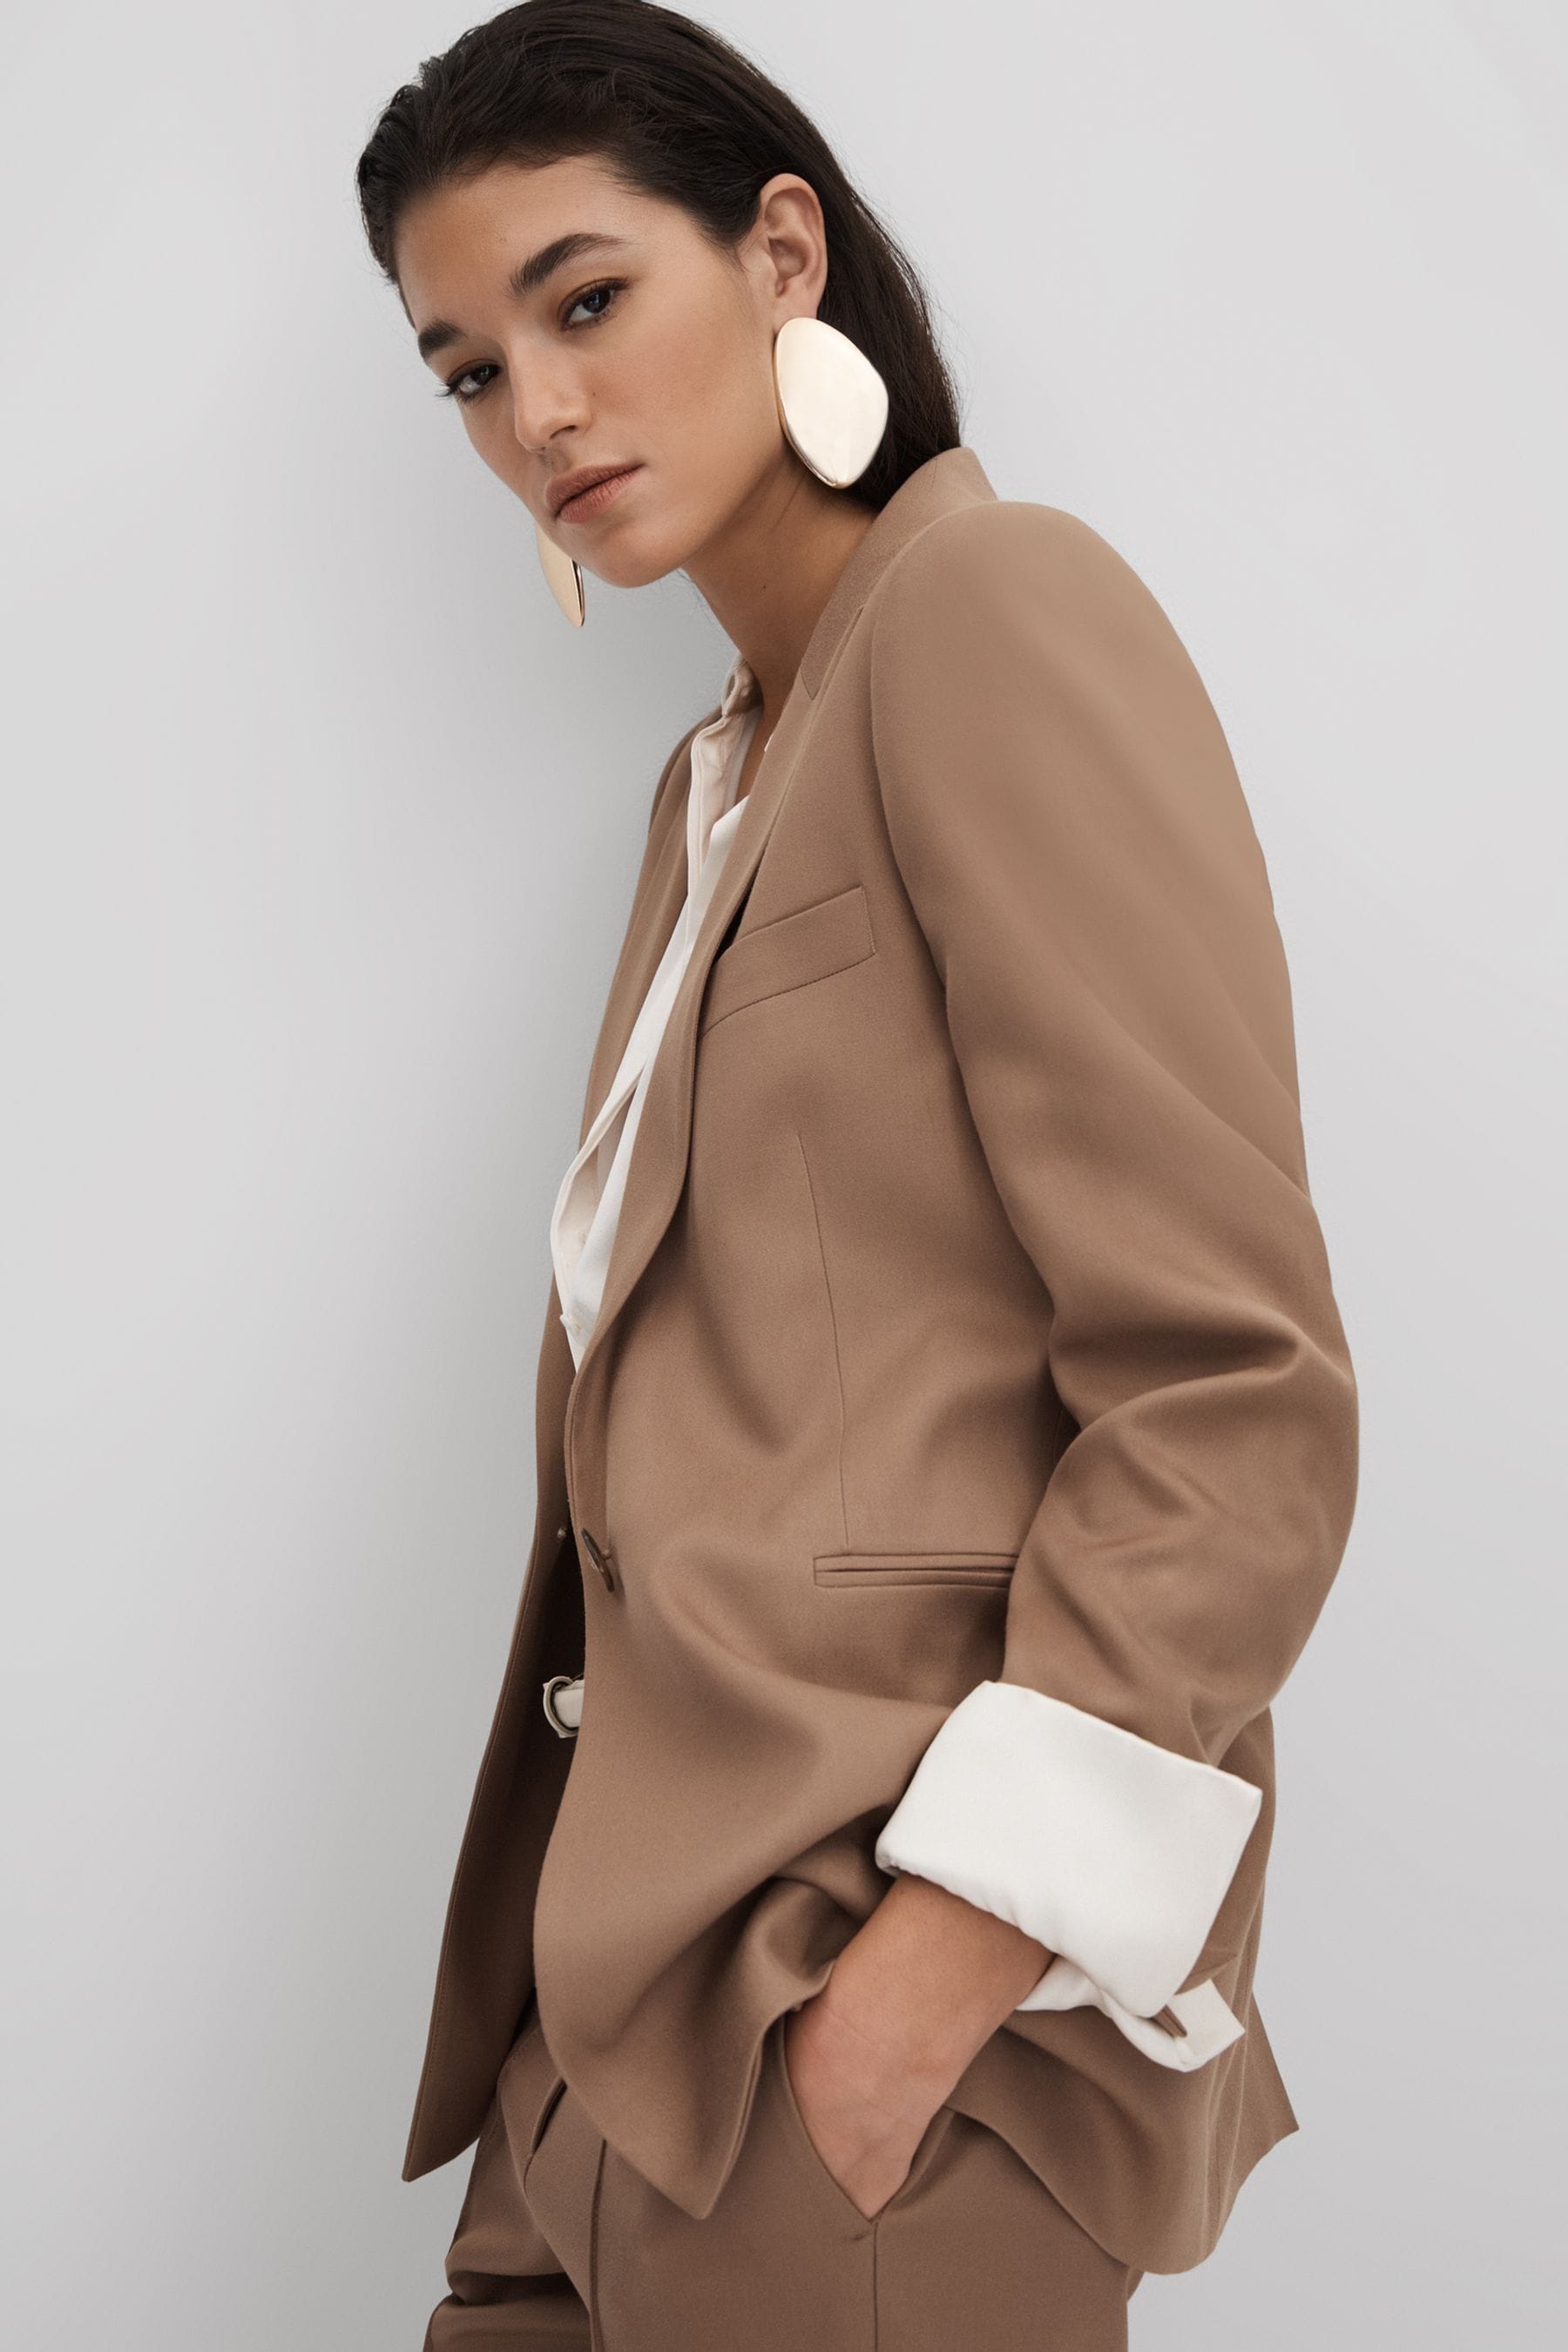 Reiss Wren - Mink Neutral Single Breasted Suit Blazer, Us 0